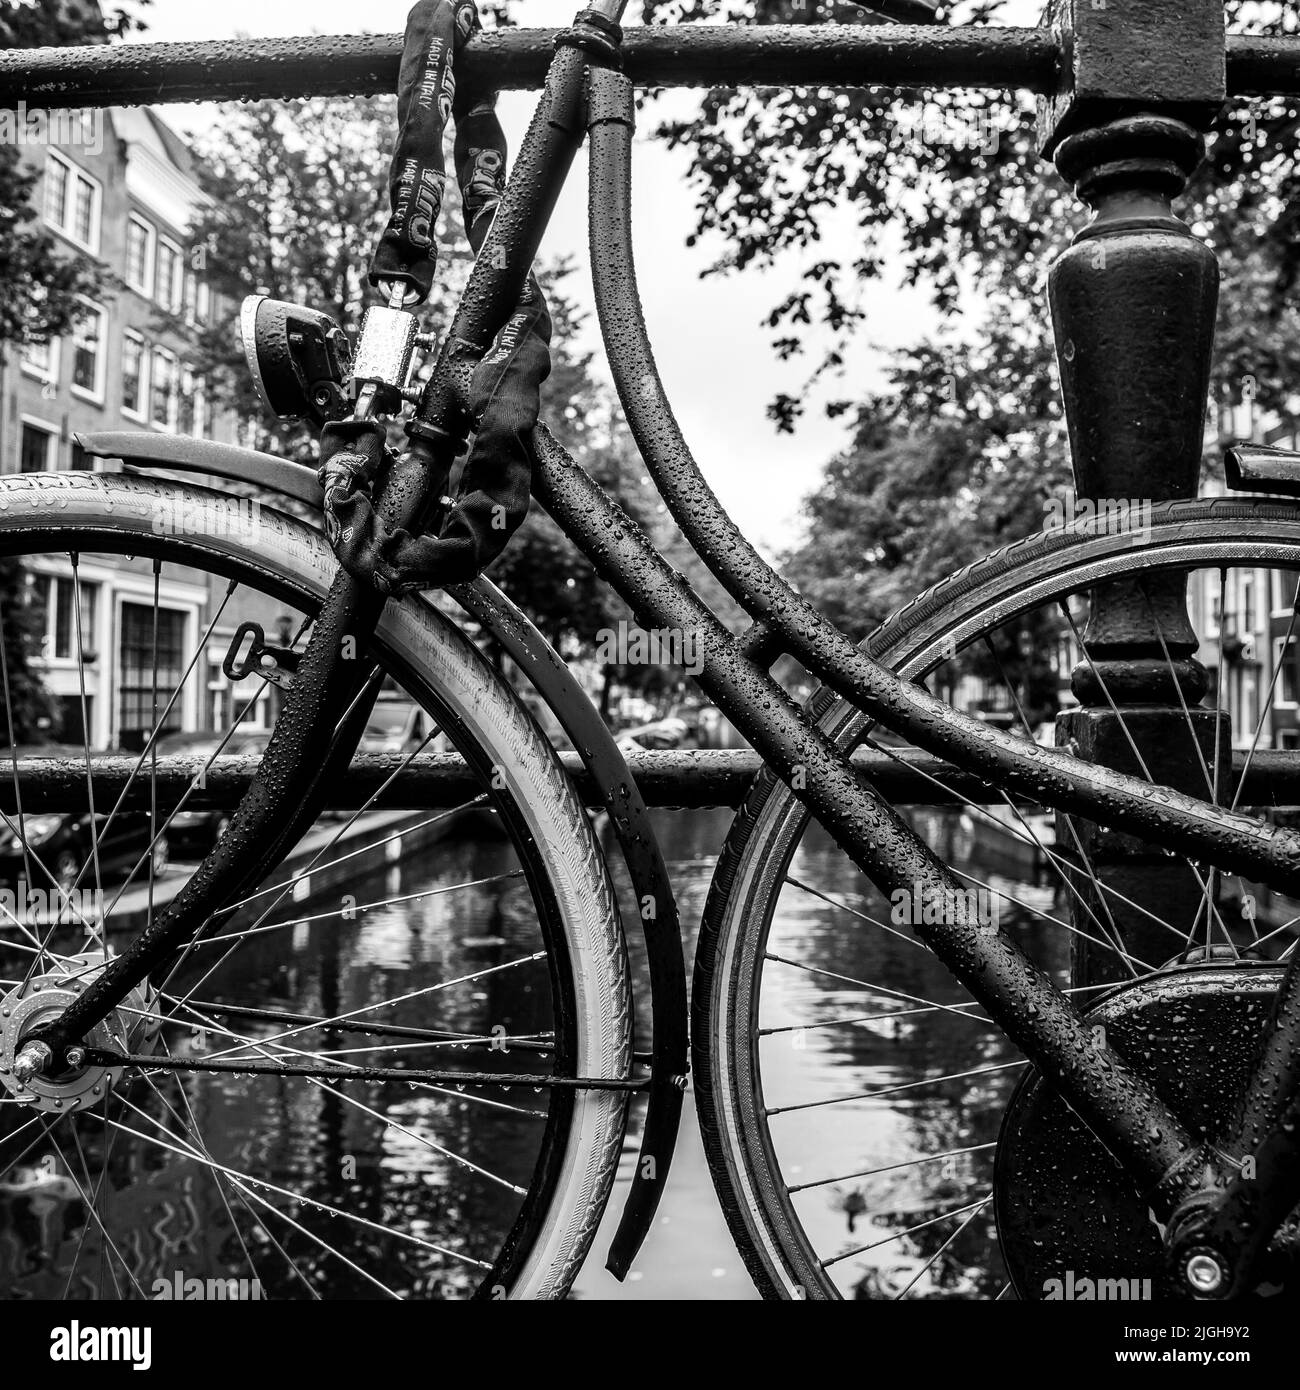 Image carrée des bicyclettes néerlandaises Banque D'Images